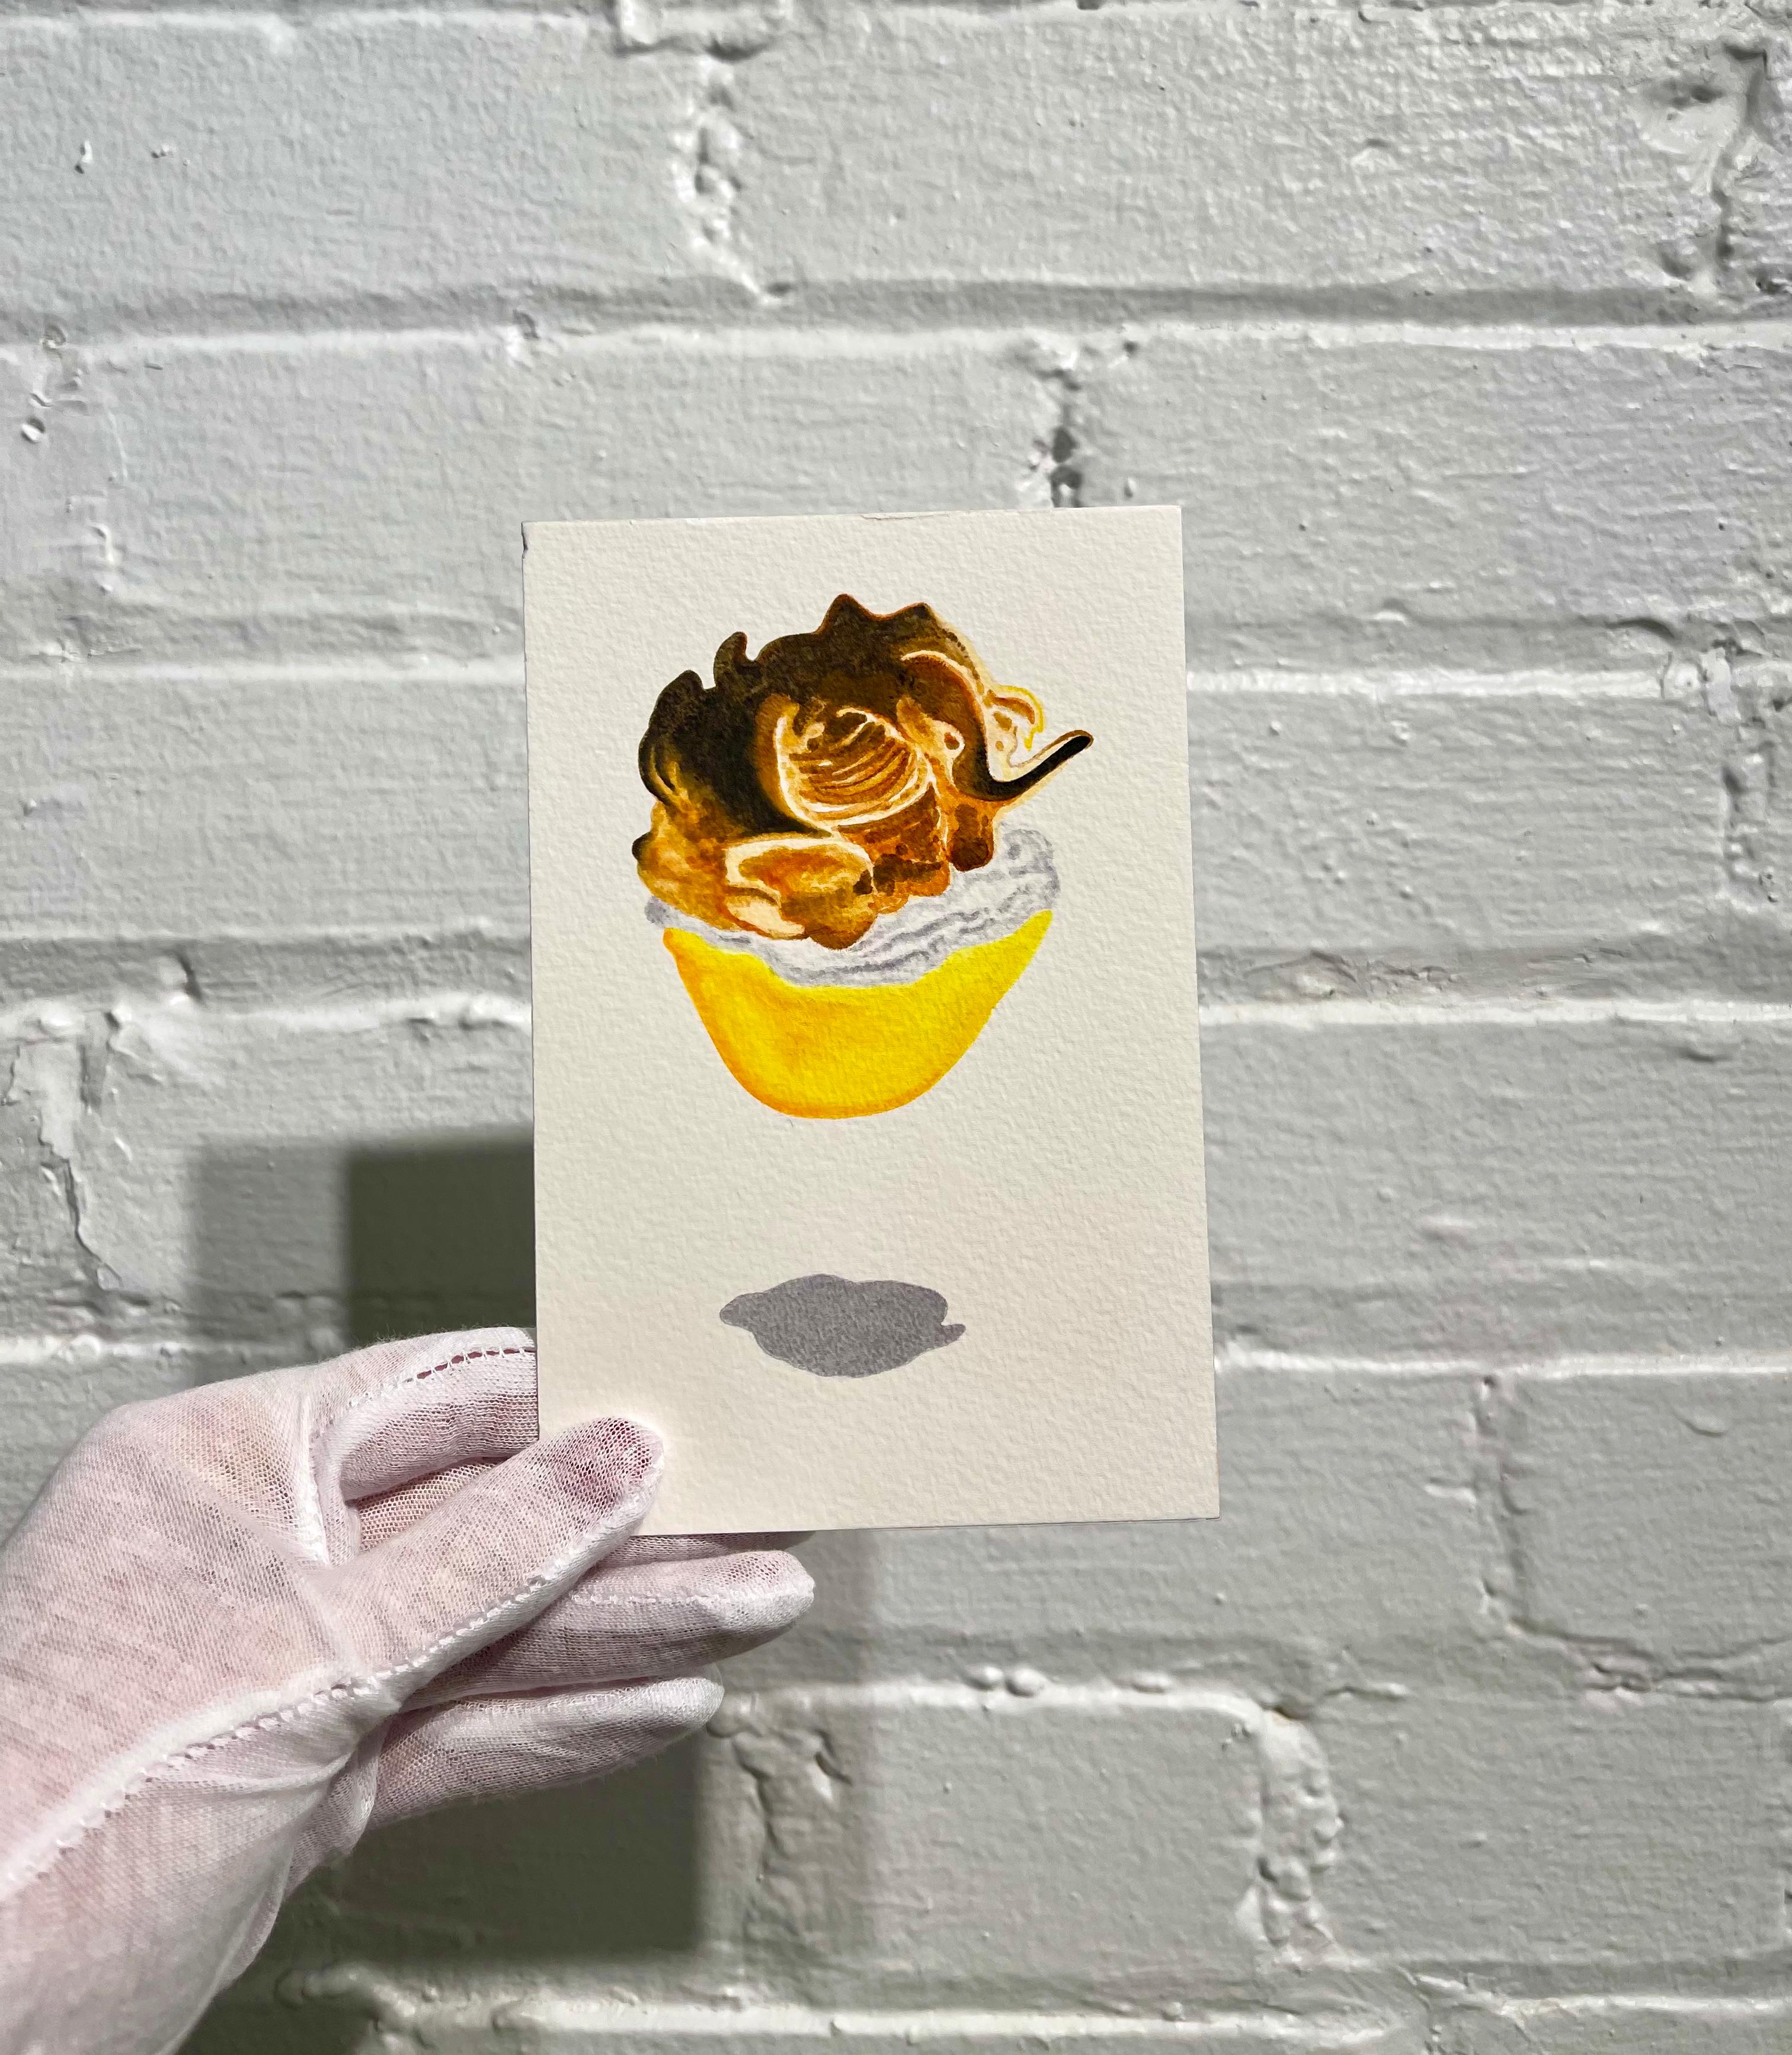 Petit dessert à manches bouffantes contemporain à l'aquarelle en crème sur papier, idéal pour la cuisine/le bar - Réalisme américain Art par Nancy Lamb 